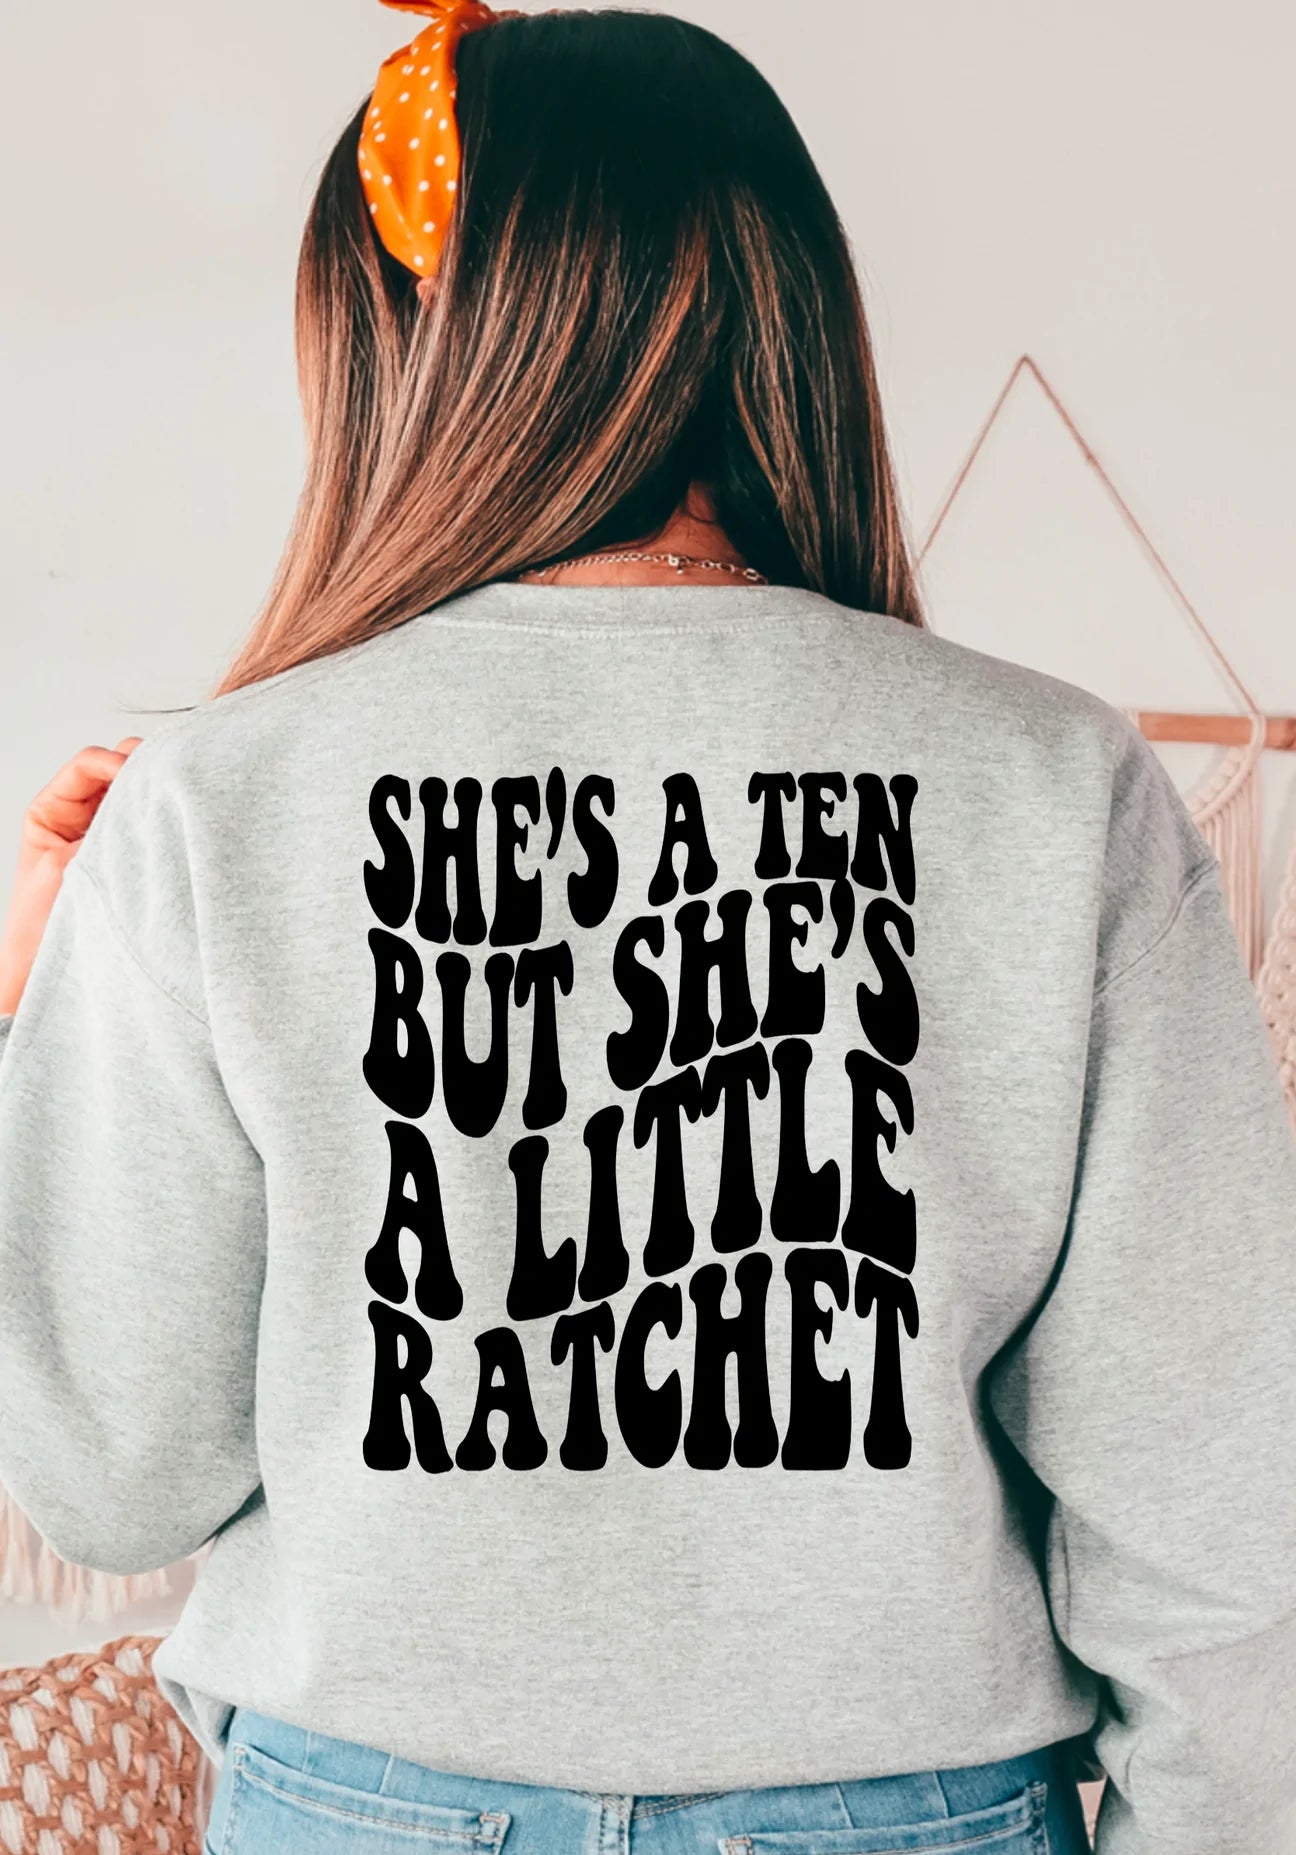 She’s a ten but a little Ratchet Tshirt